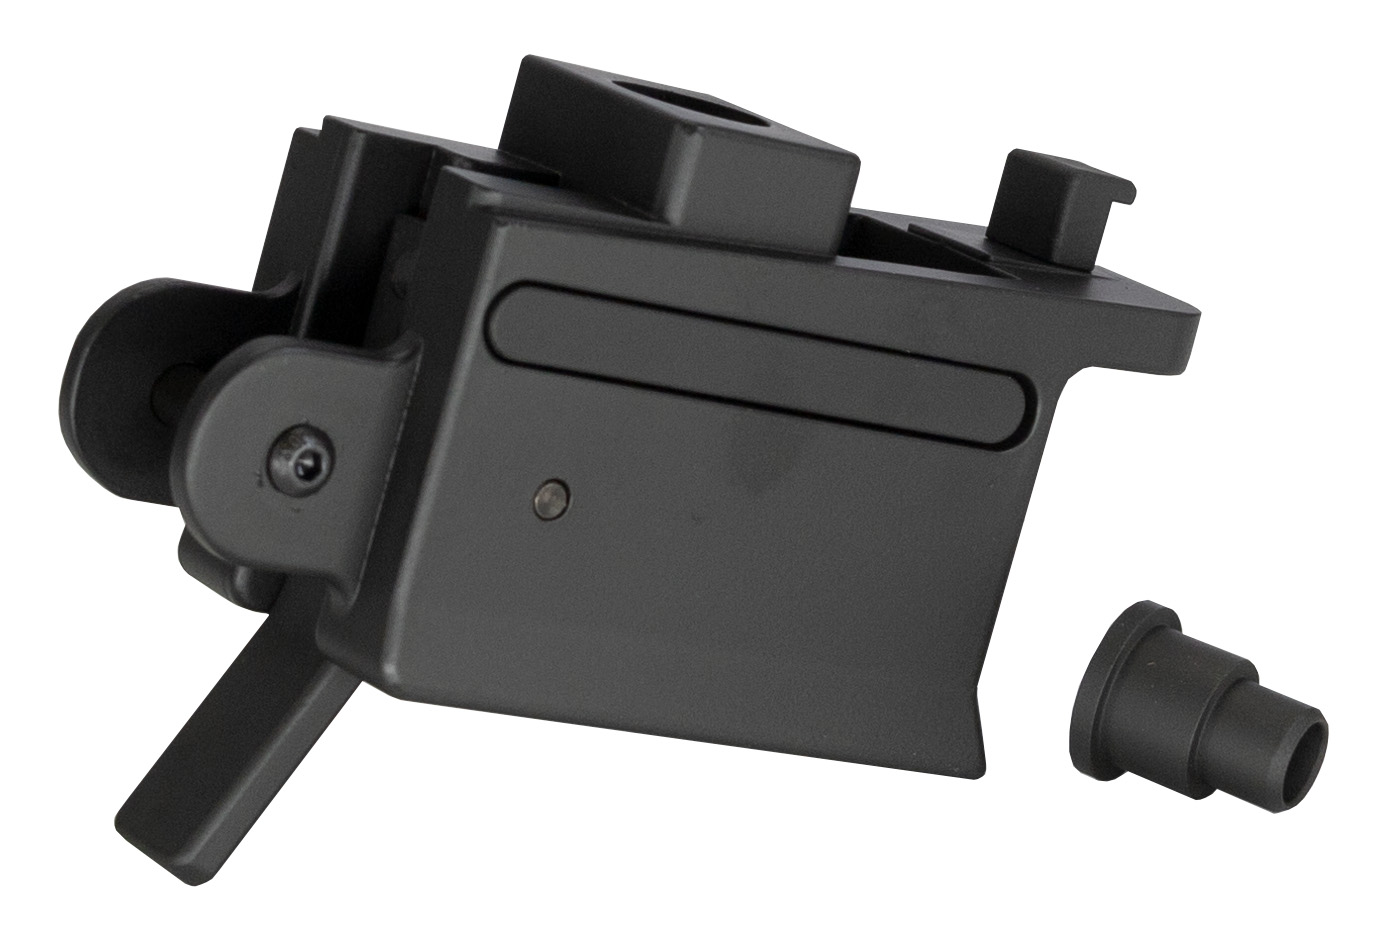 9mm PCC conversion kit for AK series